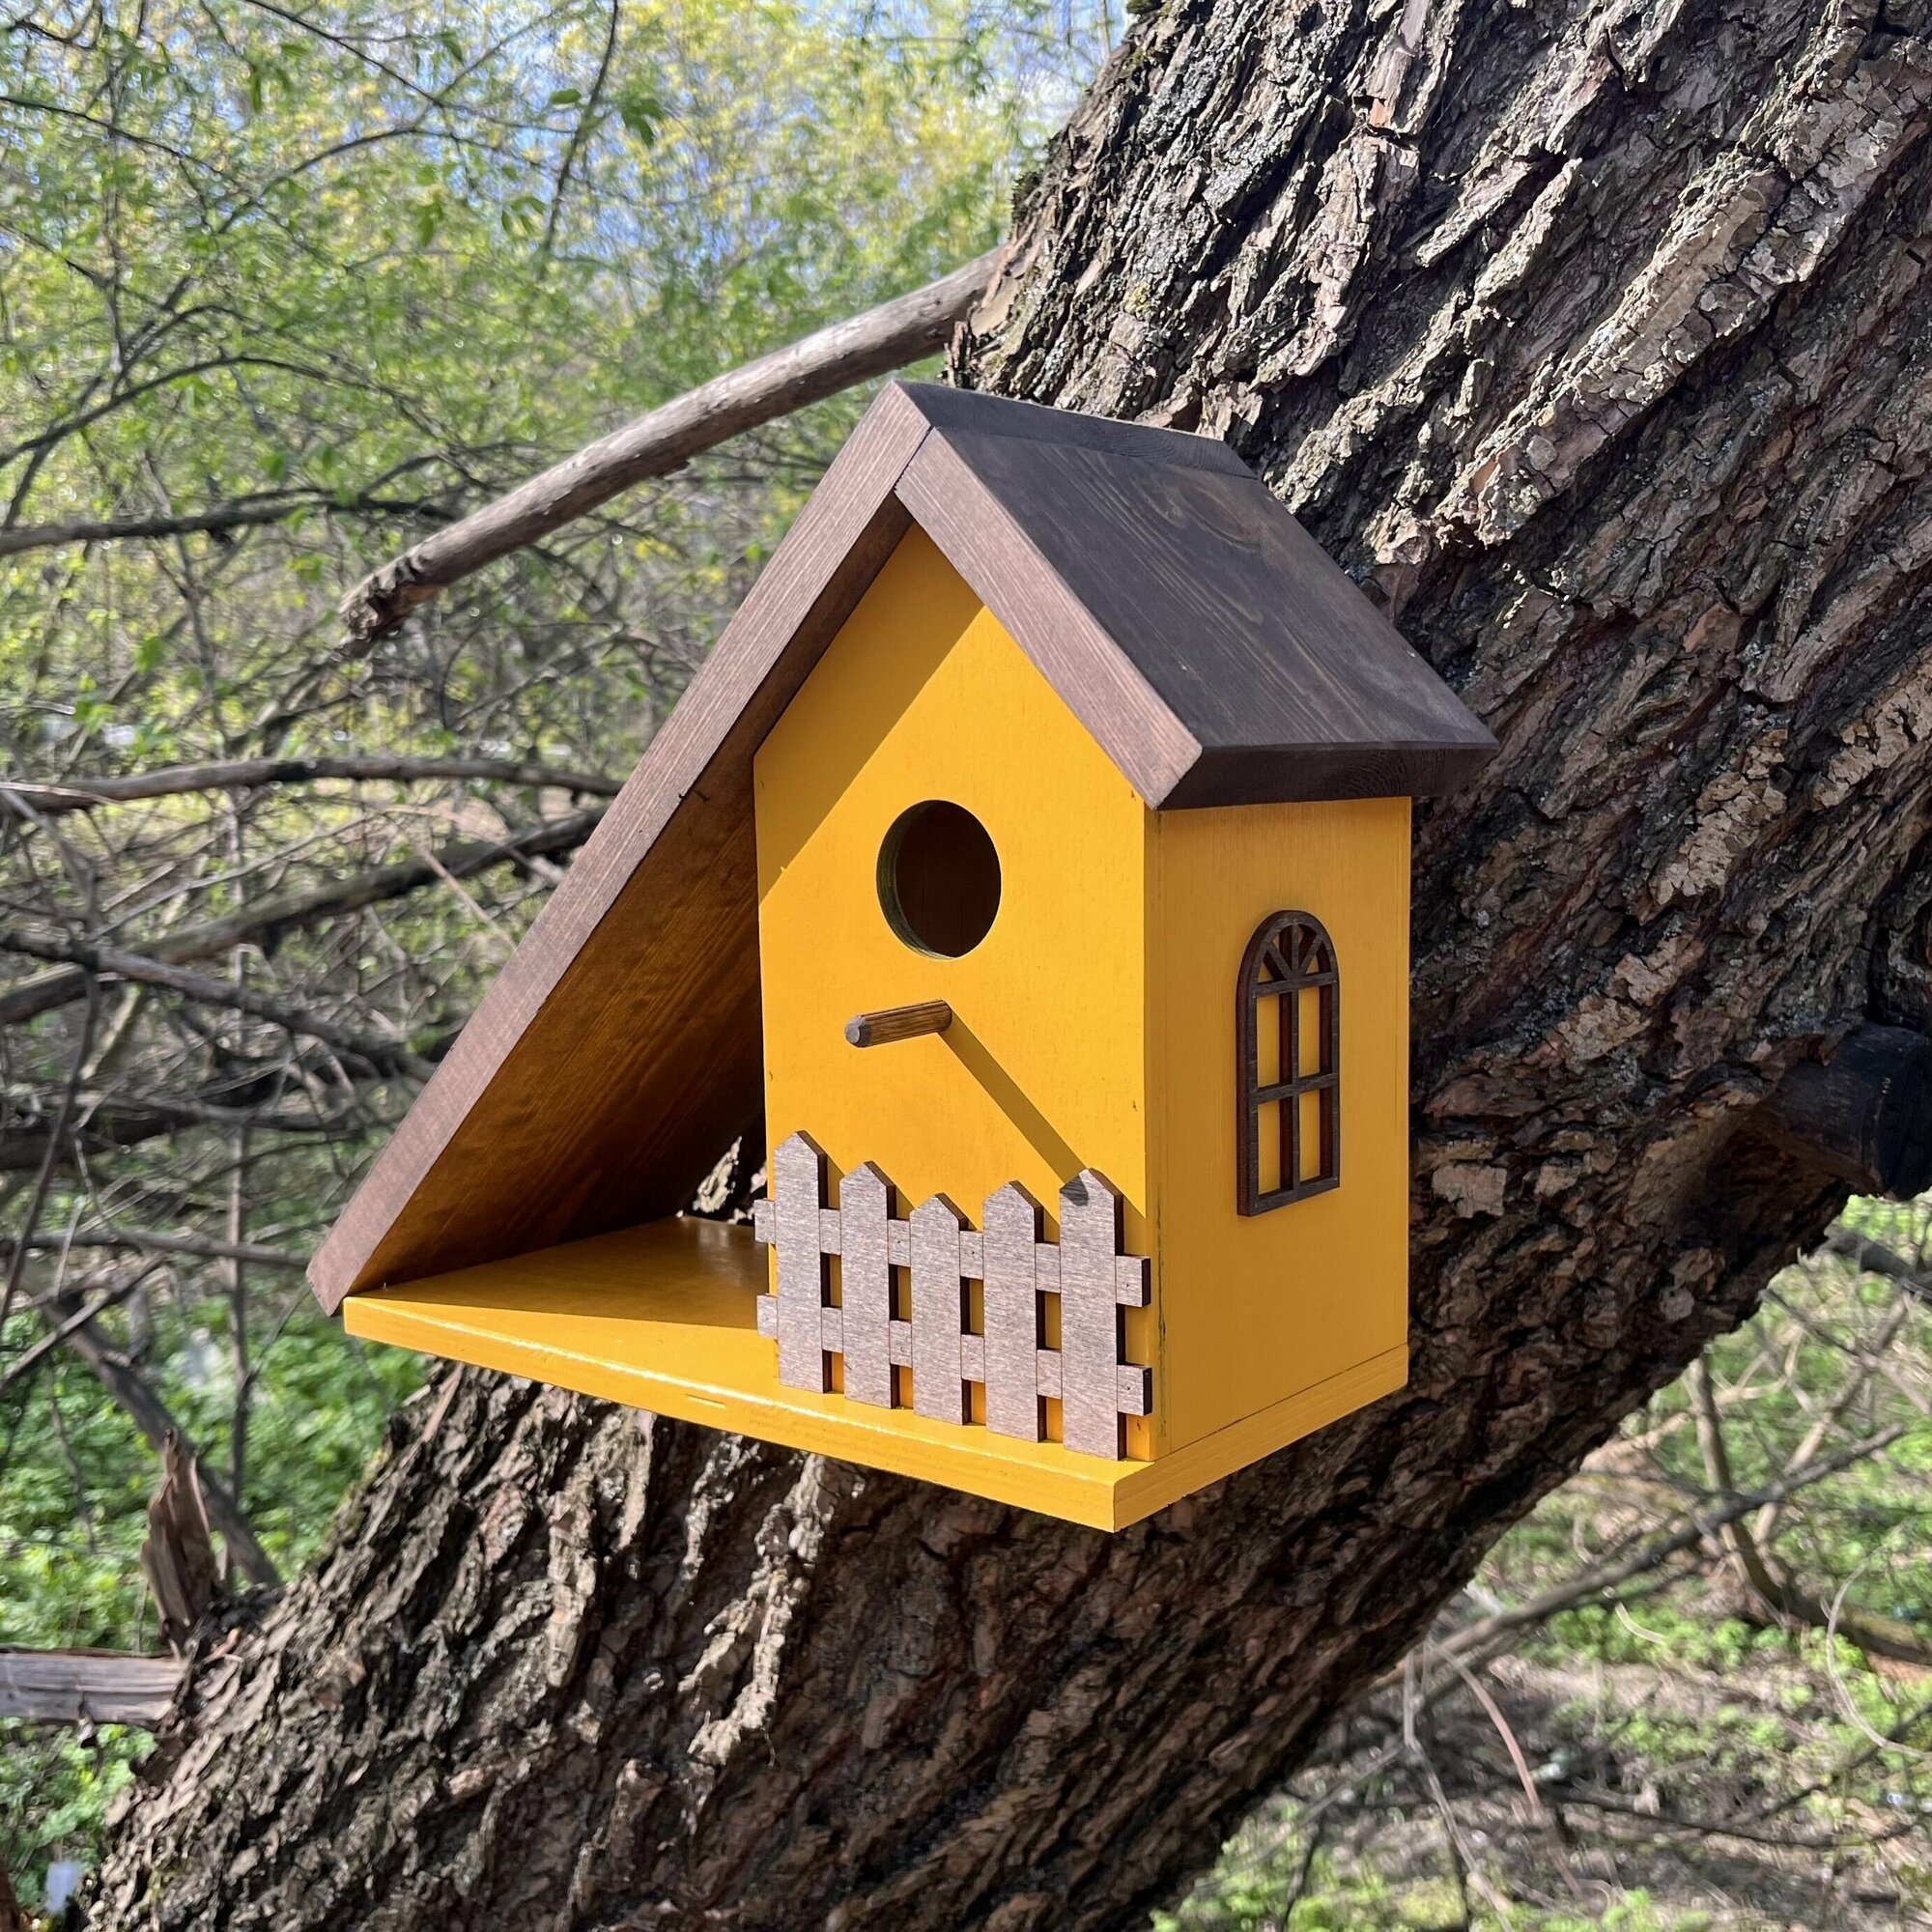 Деревянный скворечник для птиц PinePeak / Кормушка для птиц подвесная для дачи и сада, 270х340х150мм